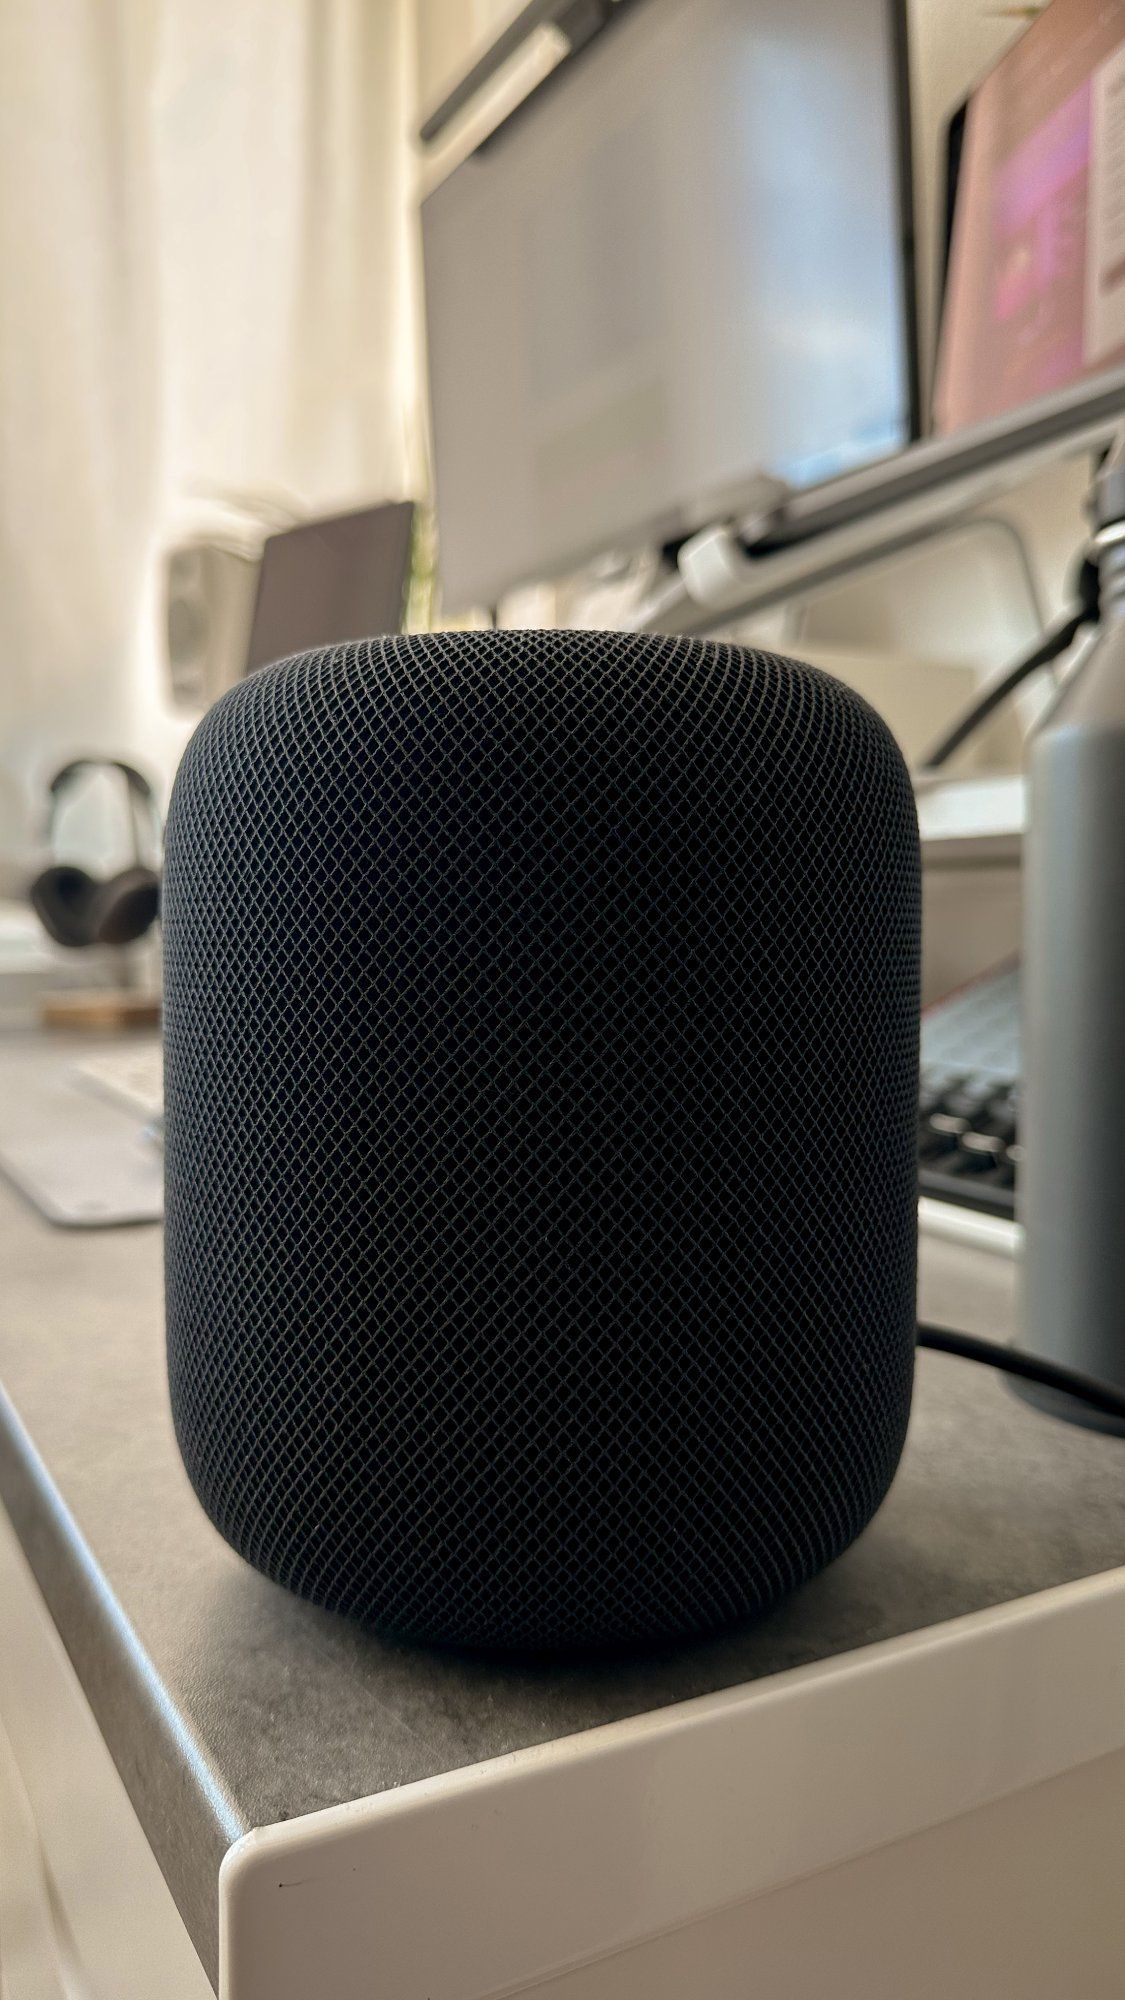 An Apple HomePod Bluetooth speaker in space grey